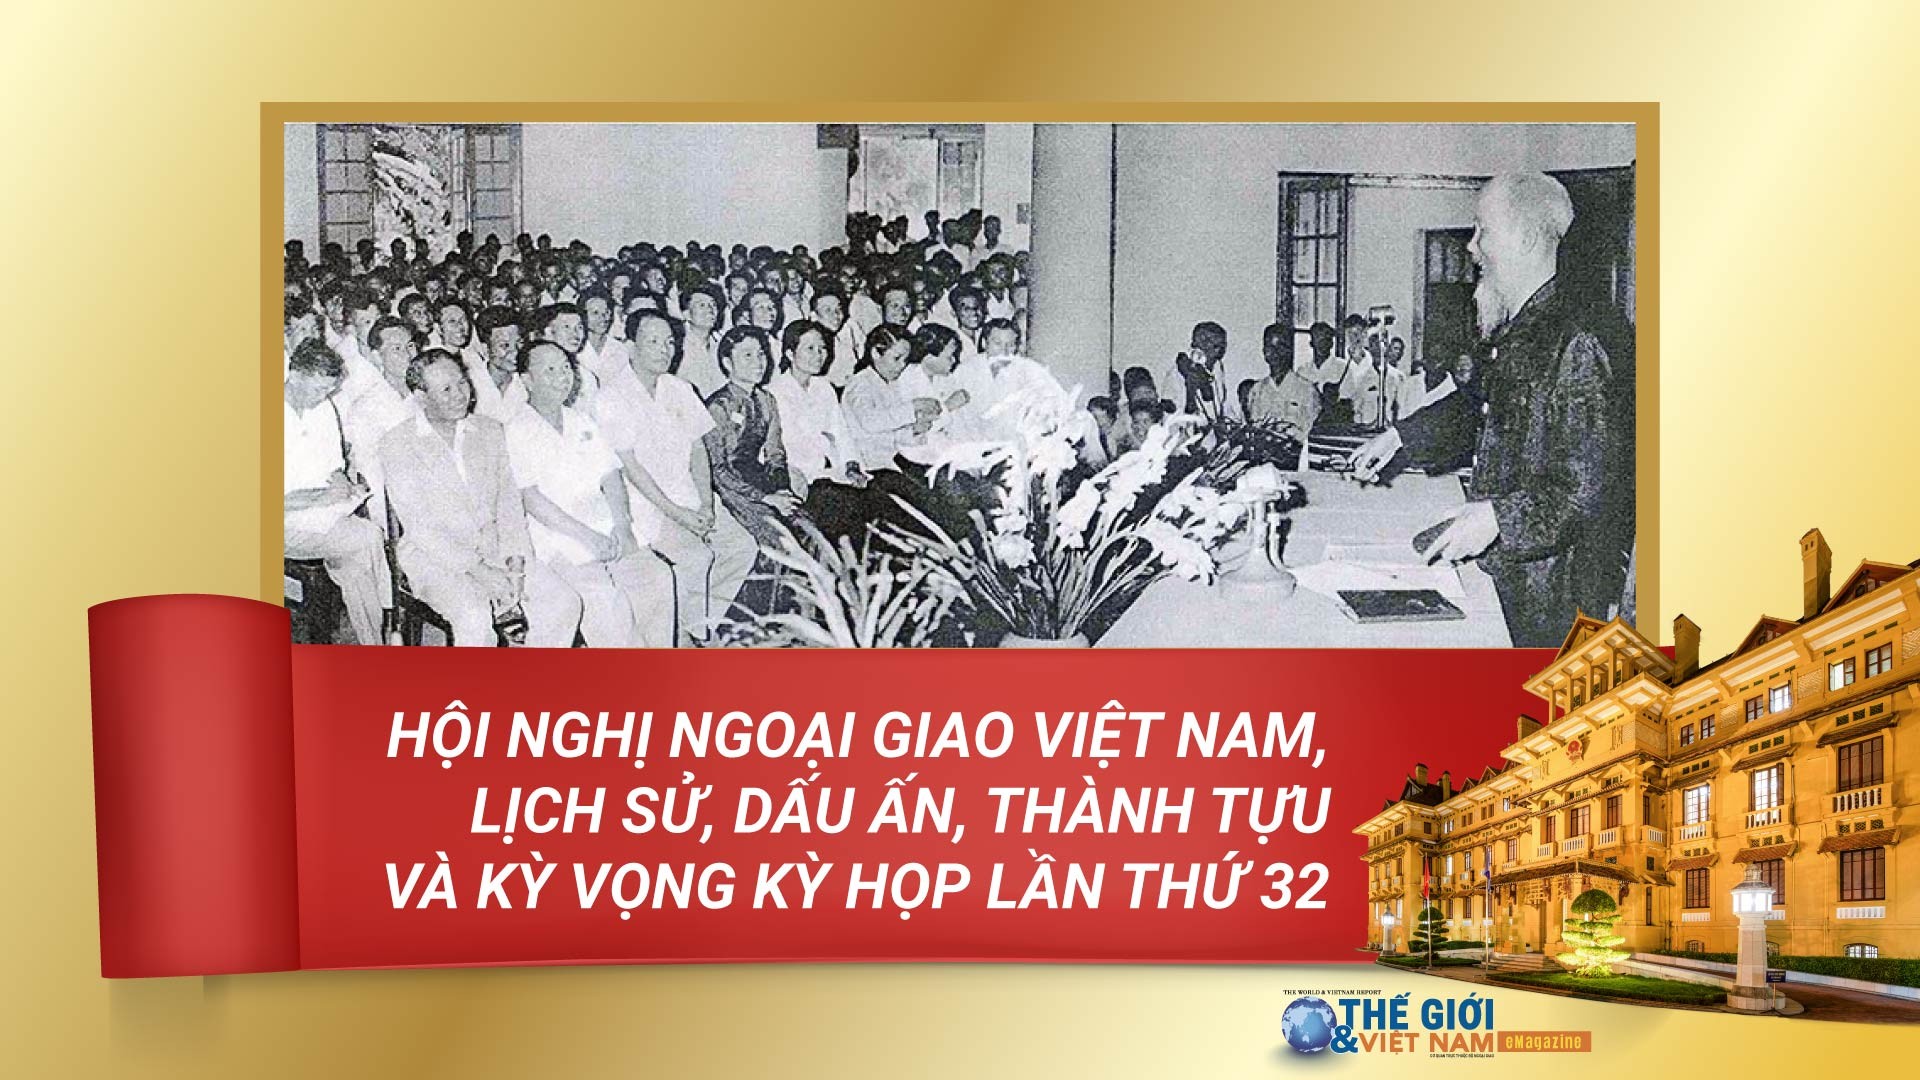 Hội nghị Ngoại giao Việt Nam, lịch sử, dấu ấn, thành tựu và kỳ vọng kỳ họp lần thứ 32